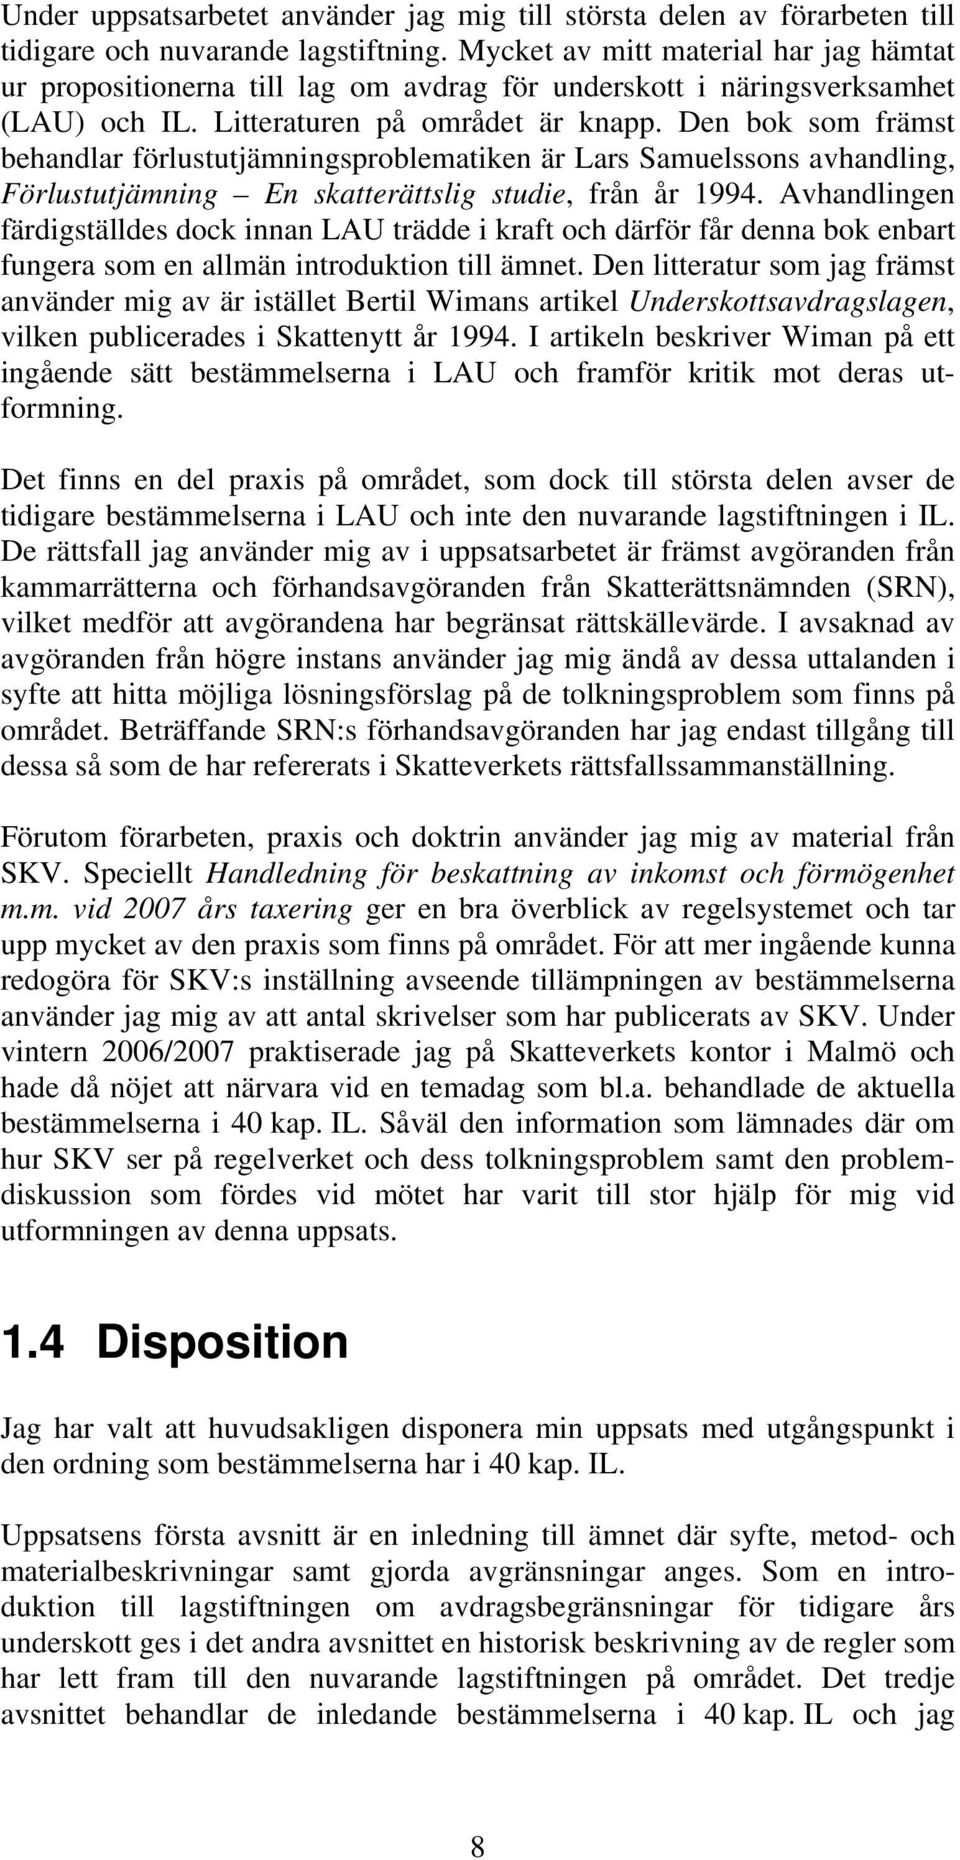 Den bok som främst behandlar förlustutjämningsproblematiken är Lars Samuelssons avhandling, Förlustutjämning En skatterättslig studie, från år 1994.